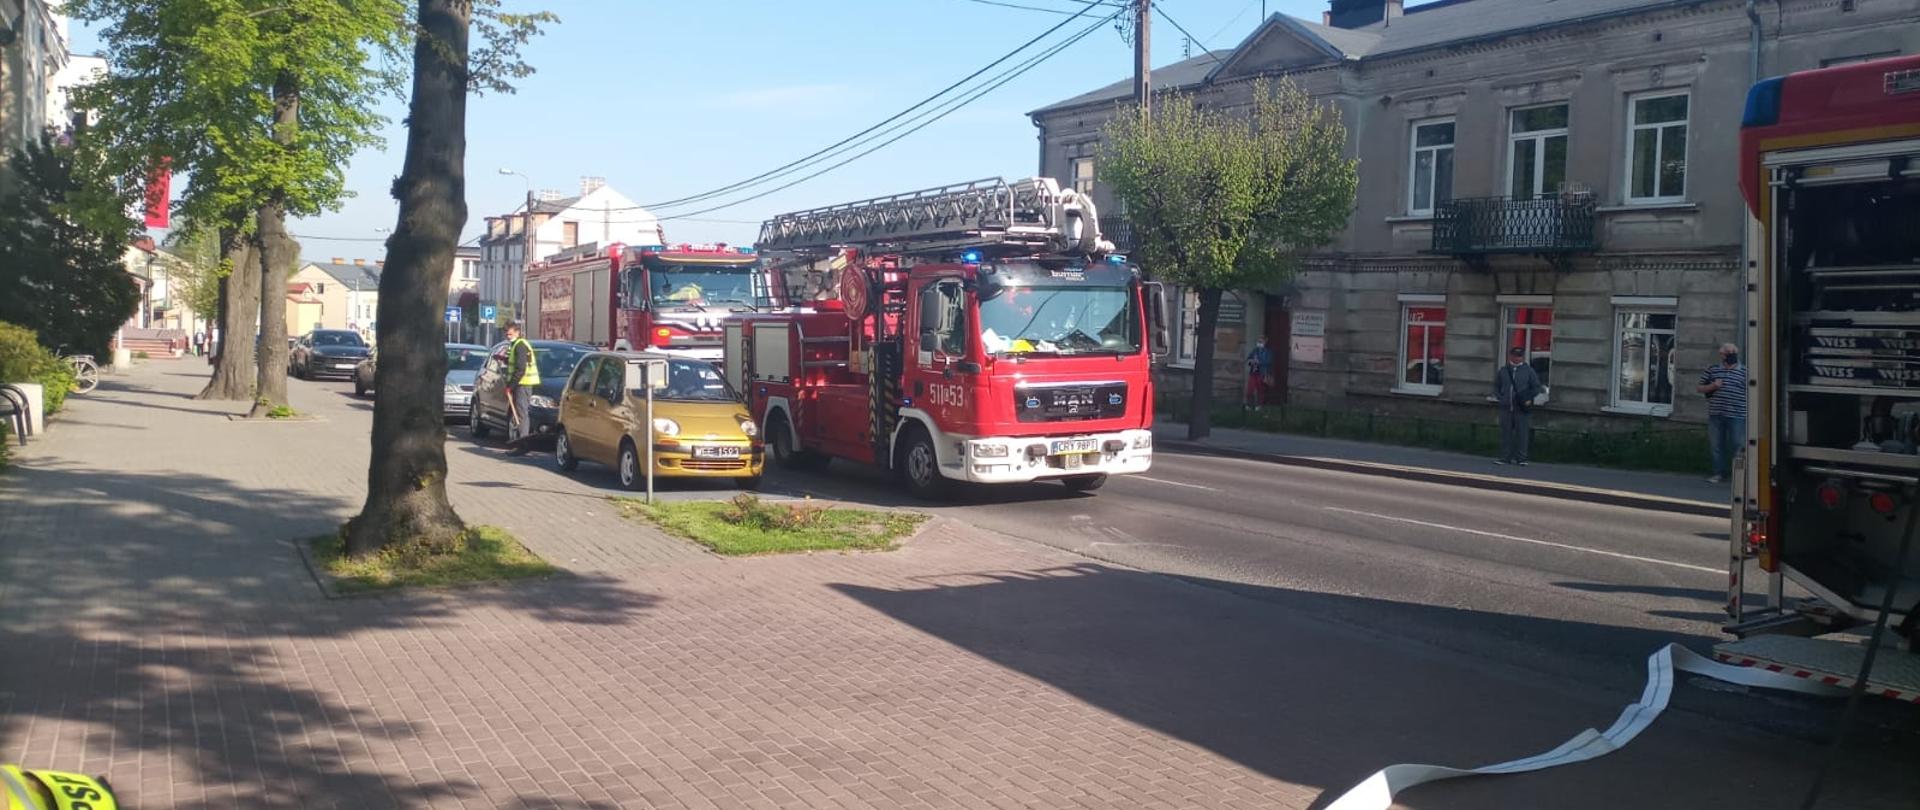 Zdjęcie przedstawia 3 samochody pożarnicze. Znajdują się na ulicy, w tle widać inne pojazdy osobowe oraz budynki mieszkalne. Z jednego samochodu strażackiego rozwinięta jest linia wężowa oraz szybkie natarcie. 